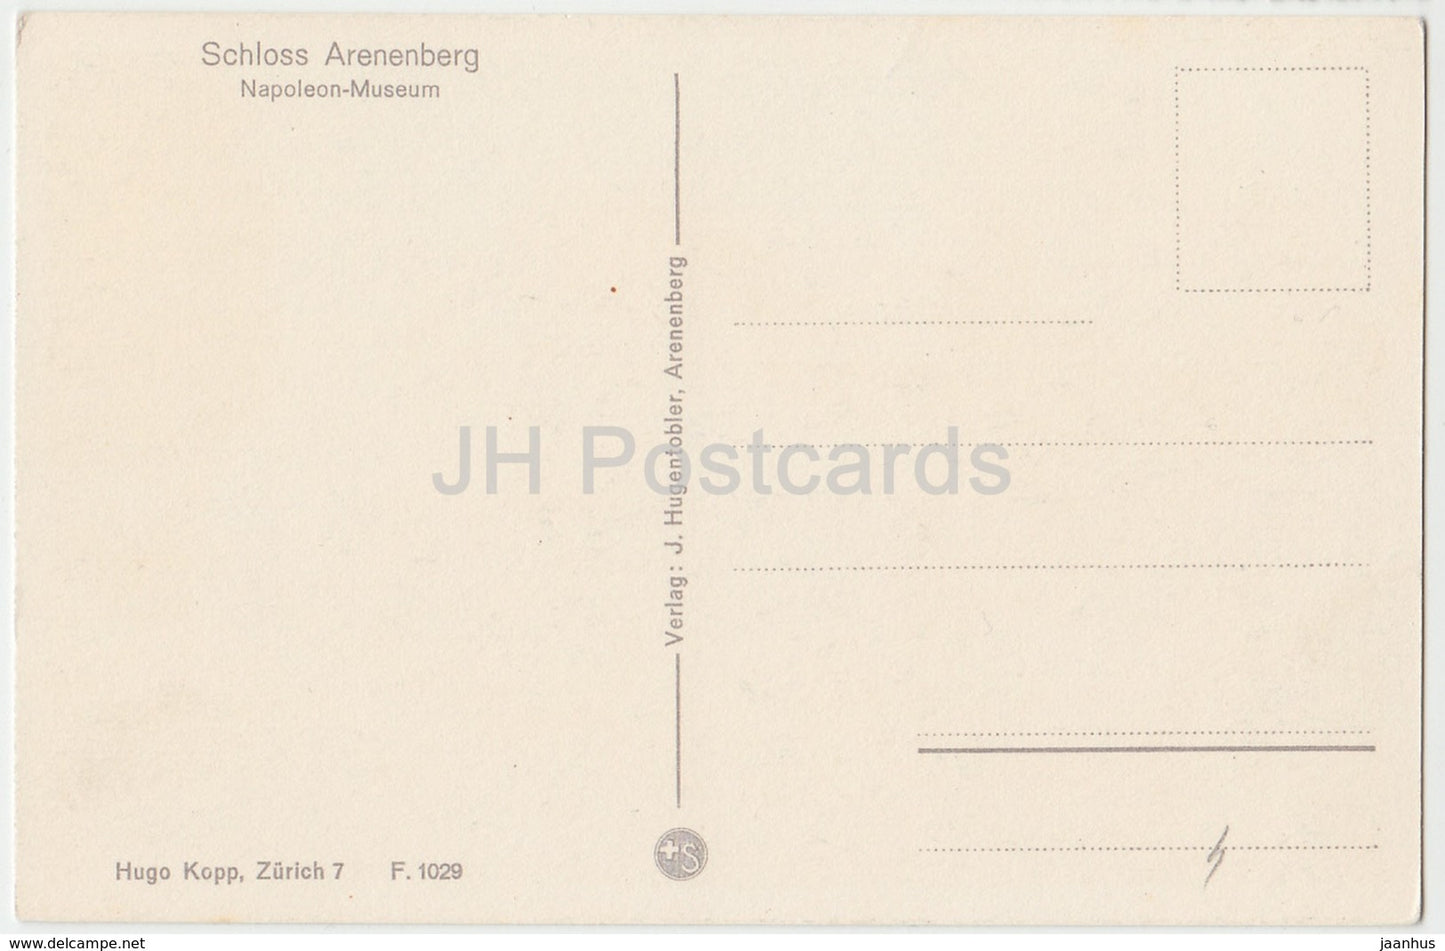 Schloss Arenenberg - Musée Napoléon - Château - Musée - Suisse - carte postale ancienne - inutilisée